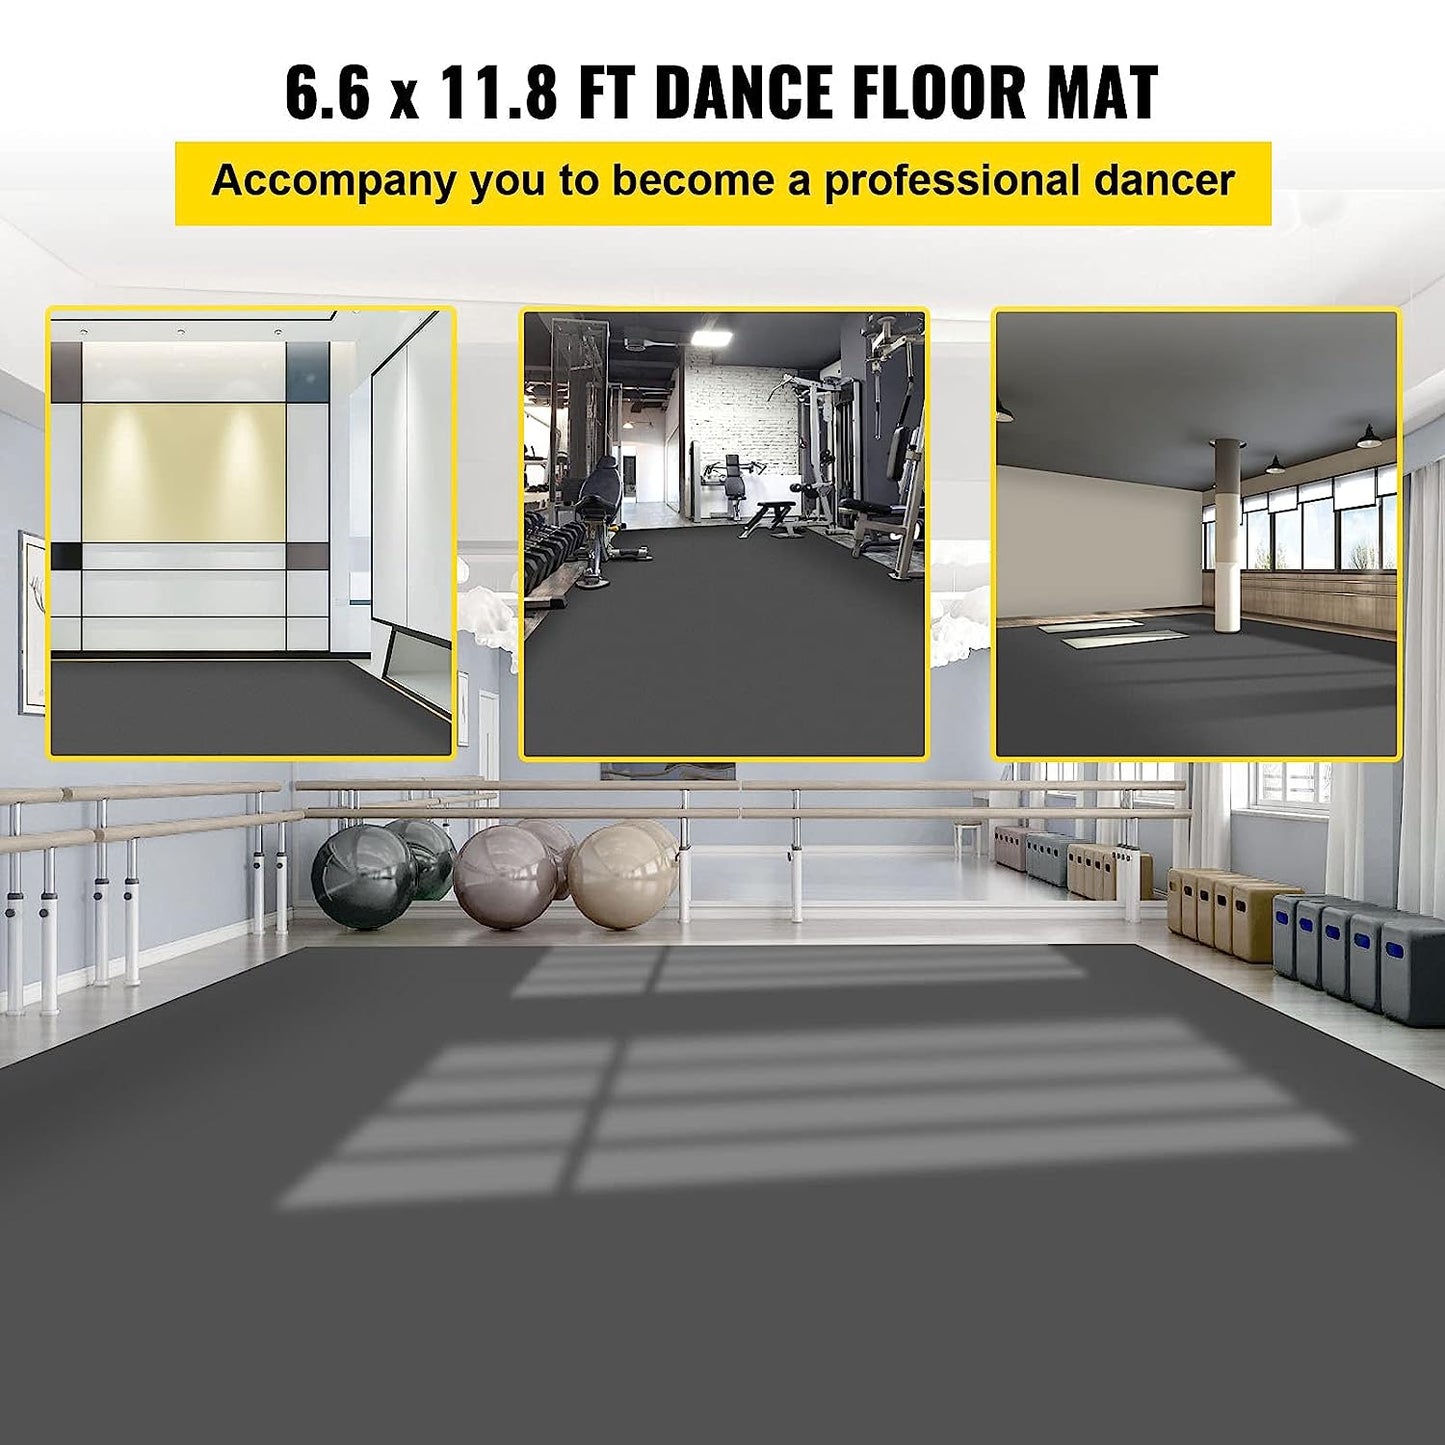 Dance Floor, 6.6x11.8ft Dance Floor Roll, 0.06in Thick PVC Vinyl Dance Floor, Black/Grey Reversible Portable Dance Floor, Non-Slip Dance Flooring, Ballet Dance Floor for Jazz, Pop, Lyrical Style